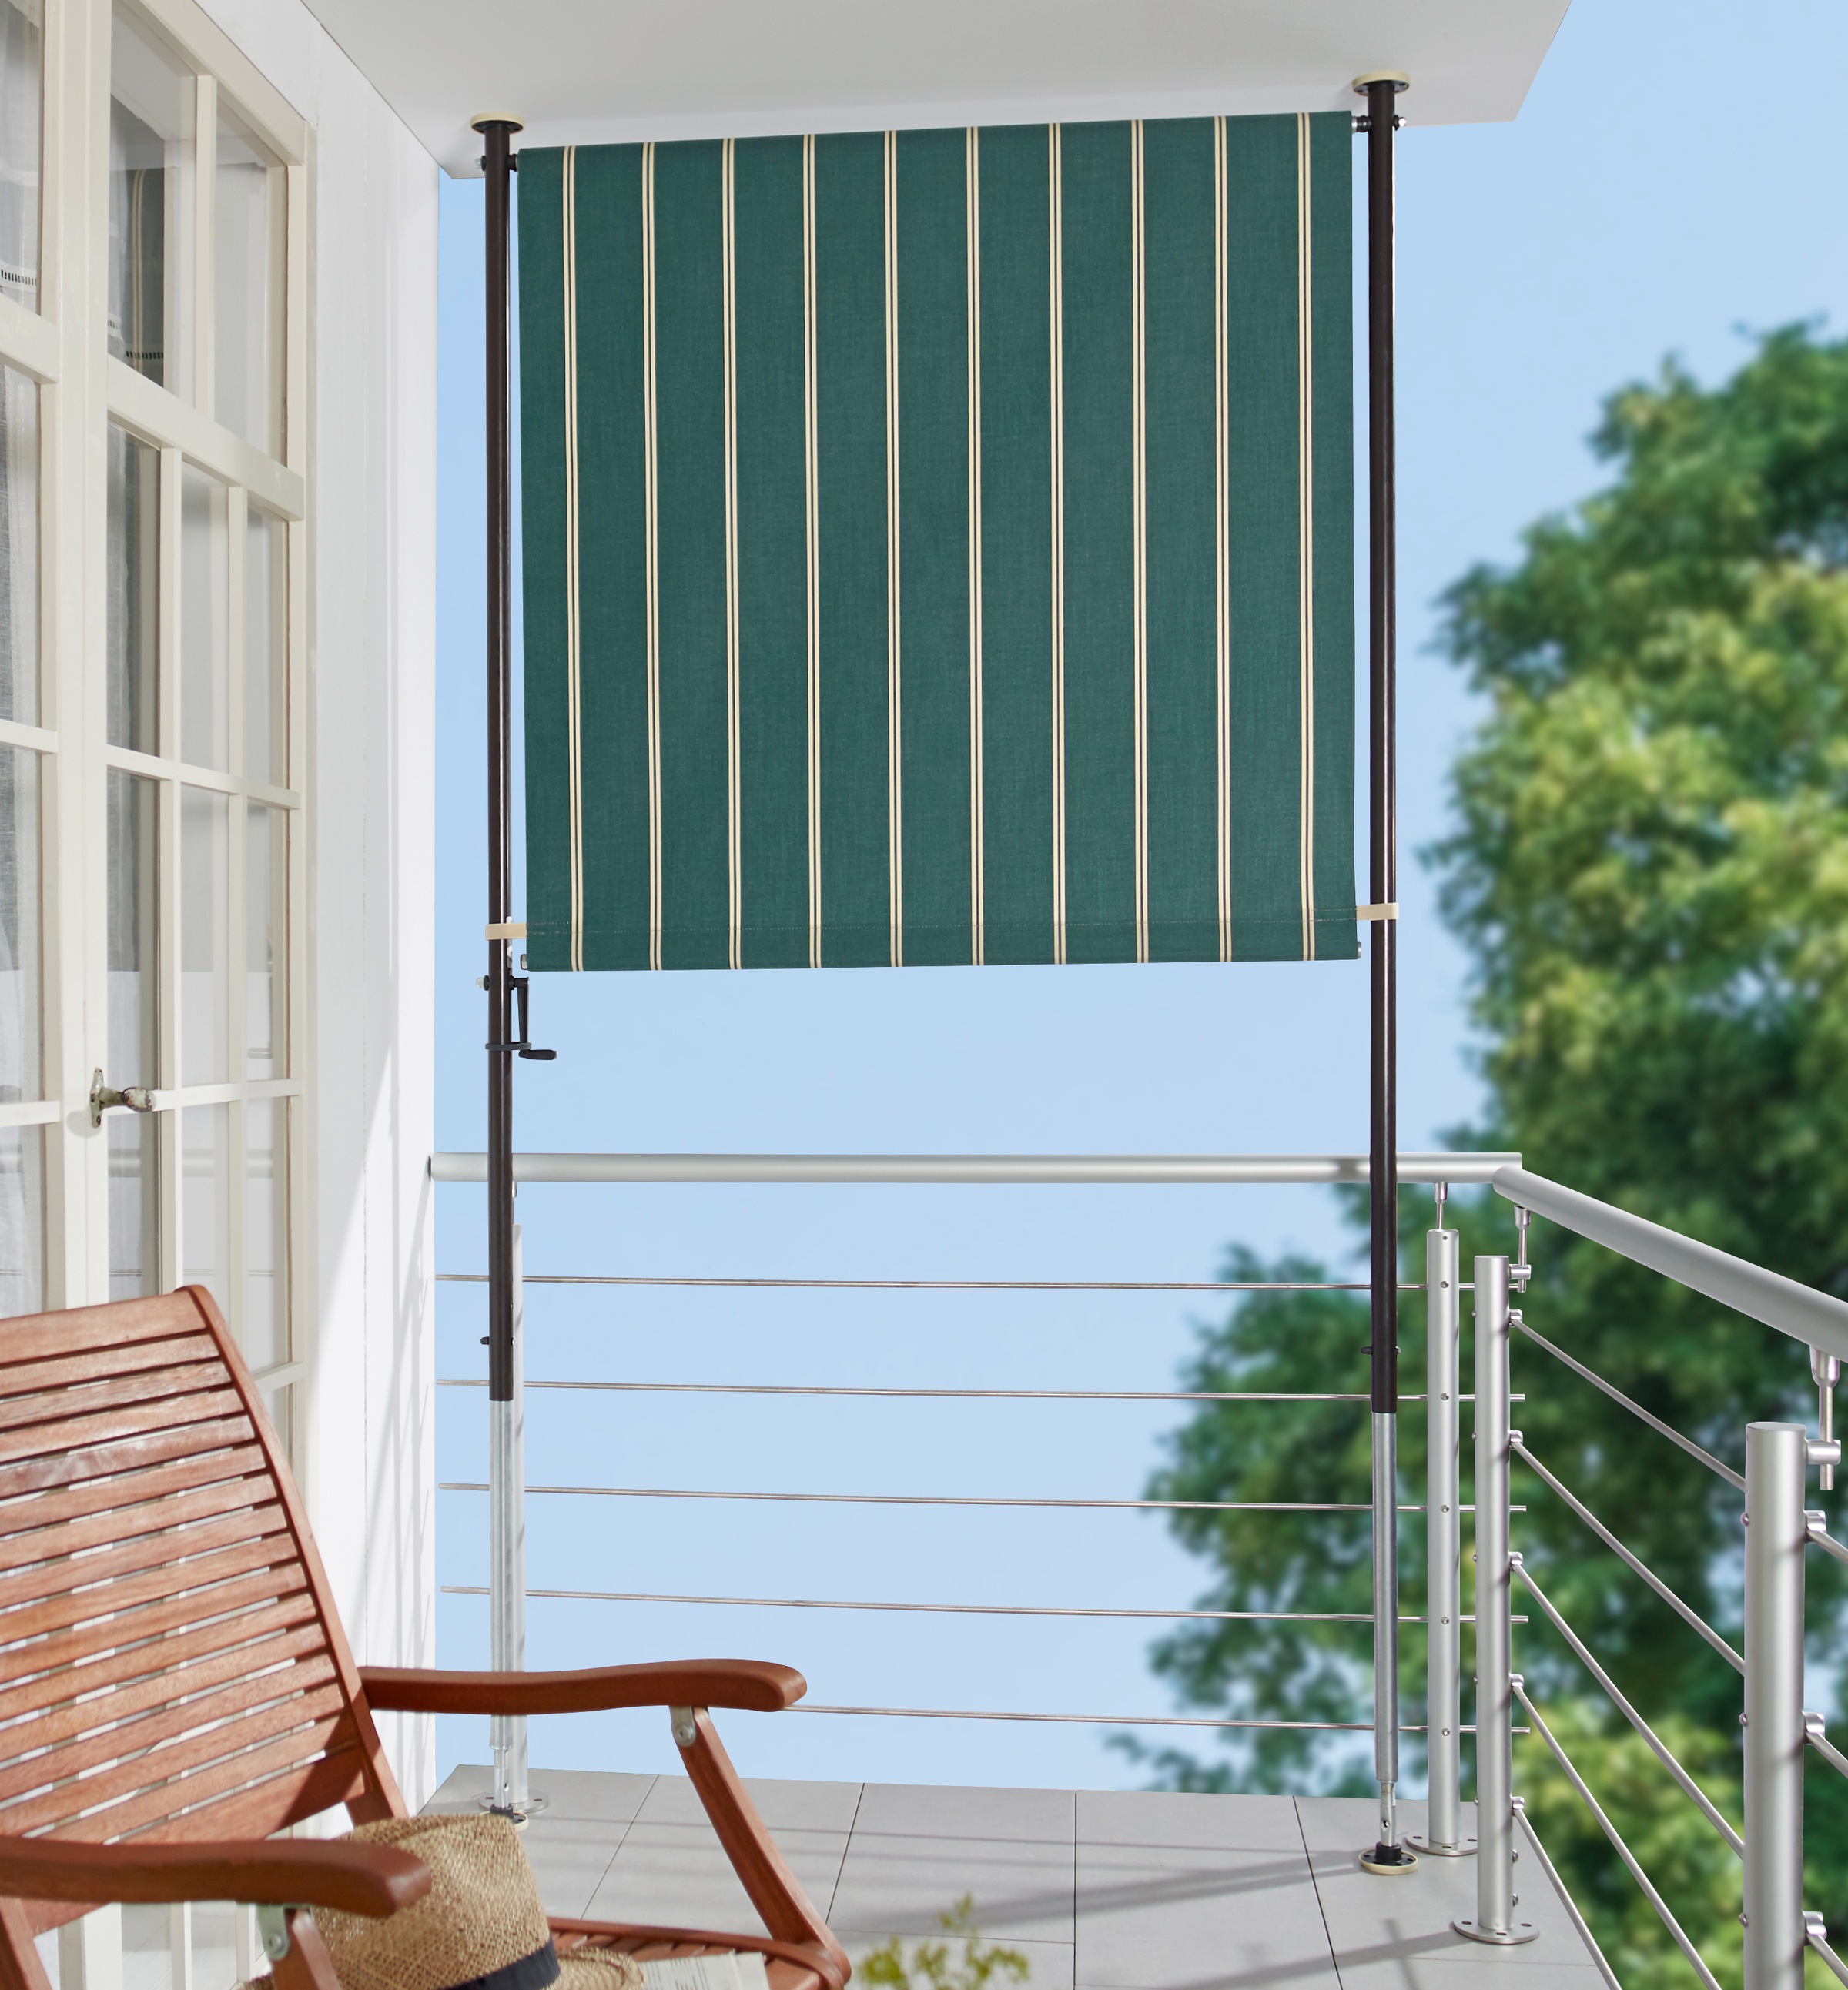 Angerer Freizeitmöbel Klemm-Senkrechtmarkise, grün/weiß, BxH: 150x225 cm